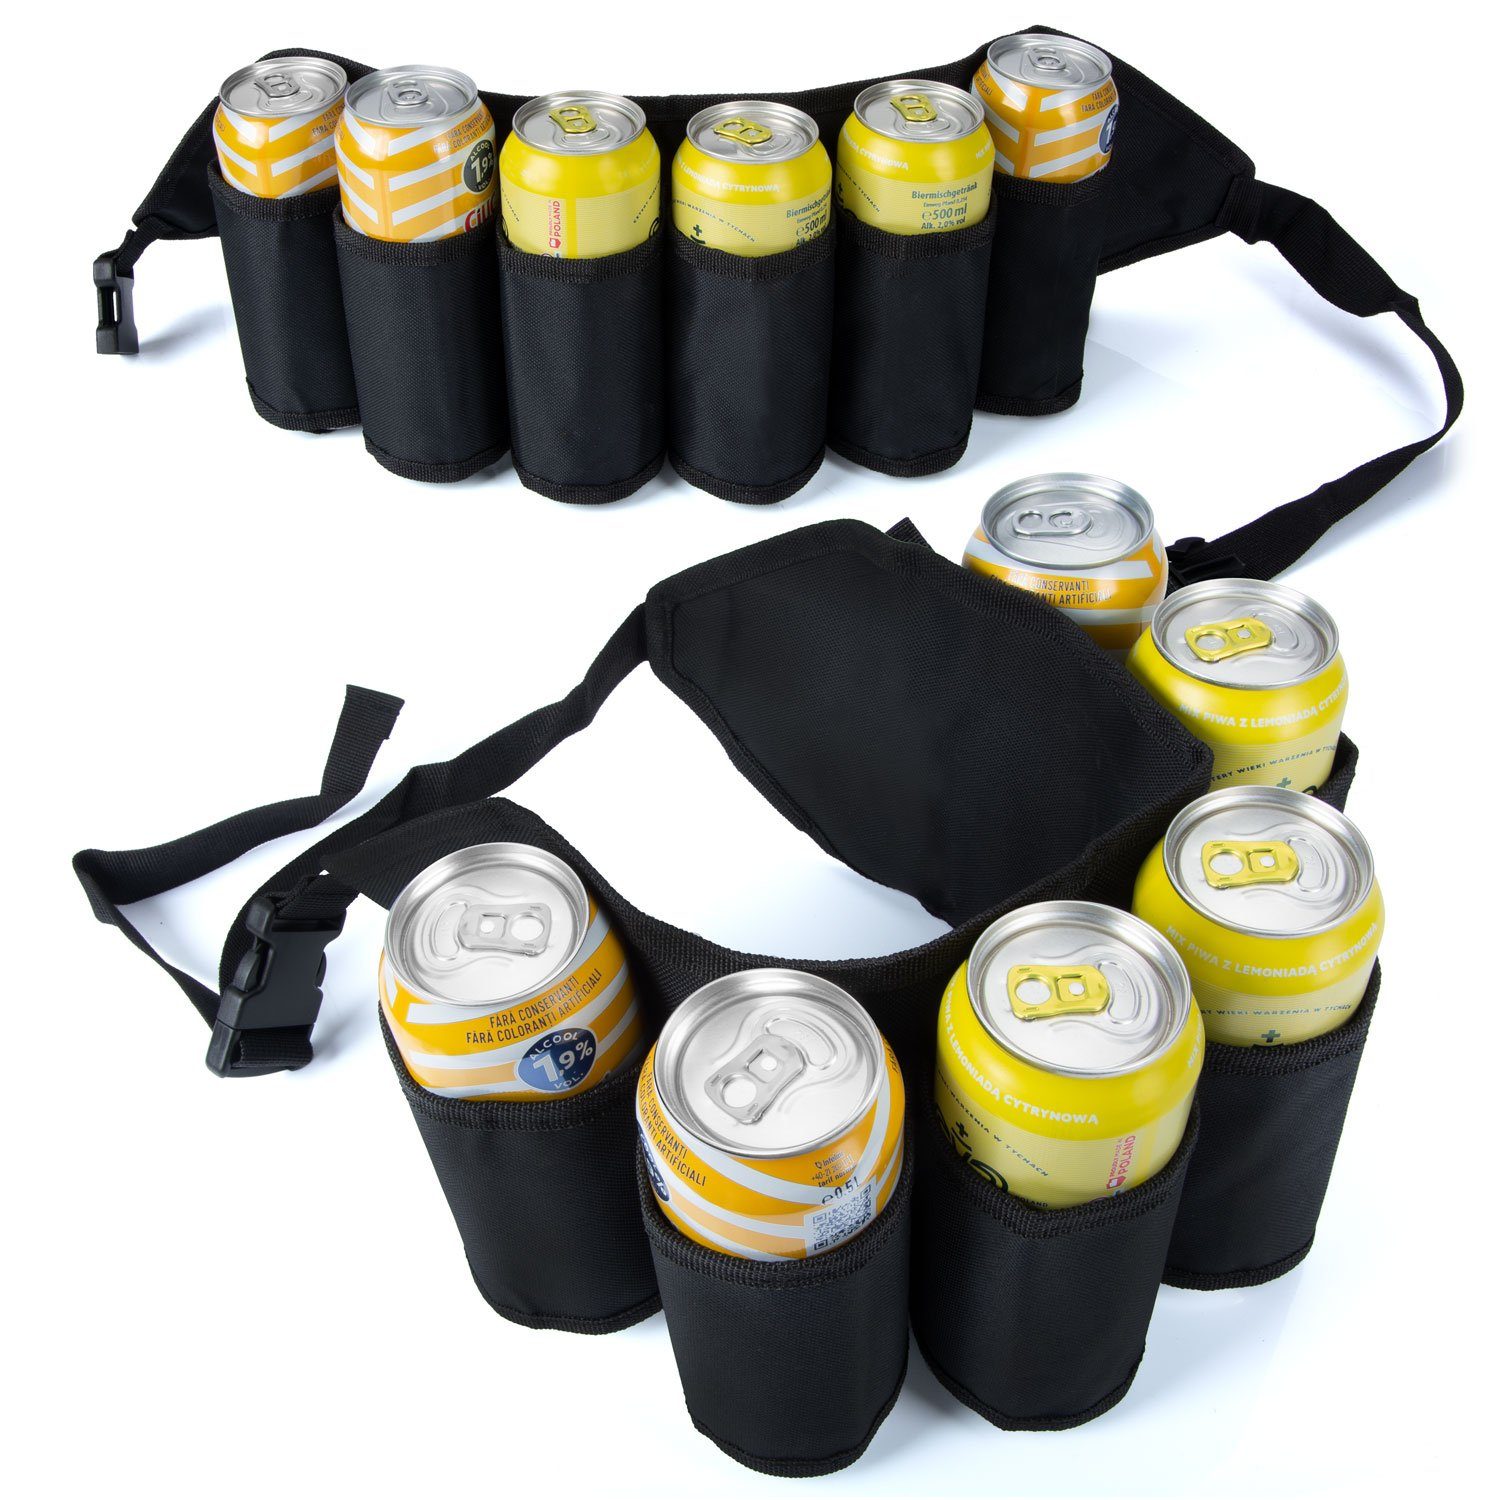 Bierflaschen-Halter (6-Fach) Goods+Gadgets Trinkgürtel Flaschenhalter Bier-Holster Biergürtel